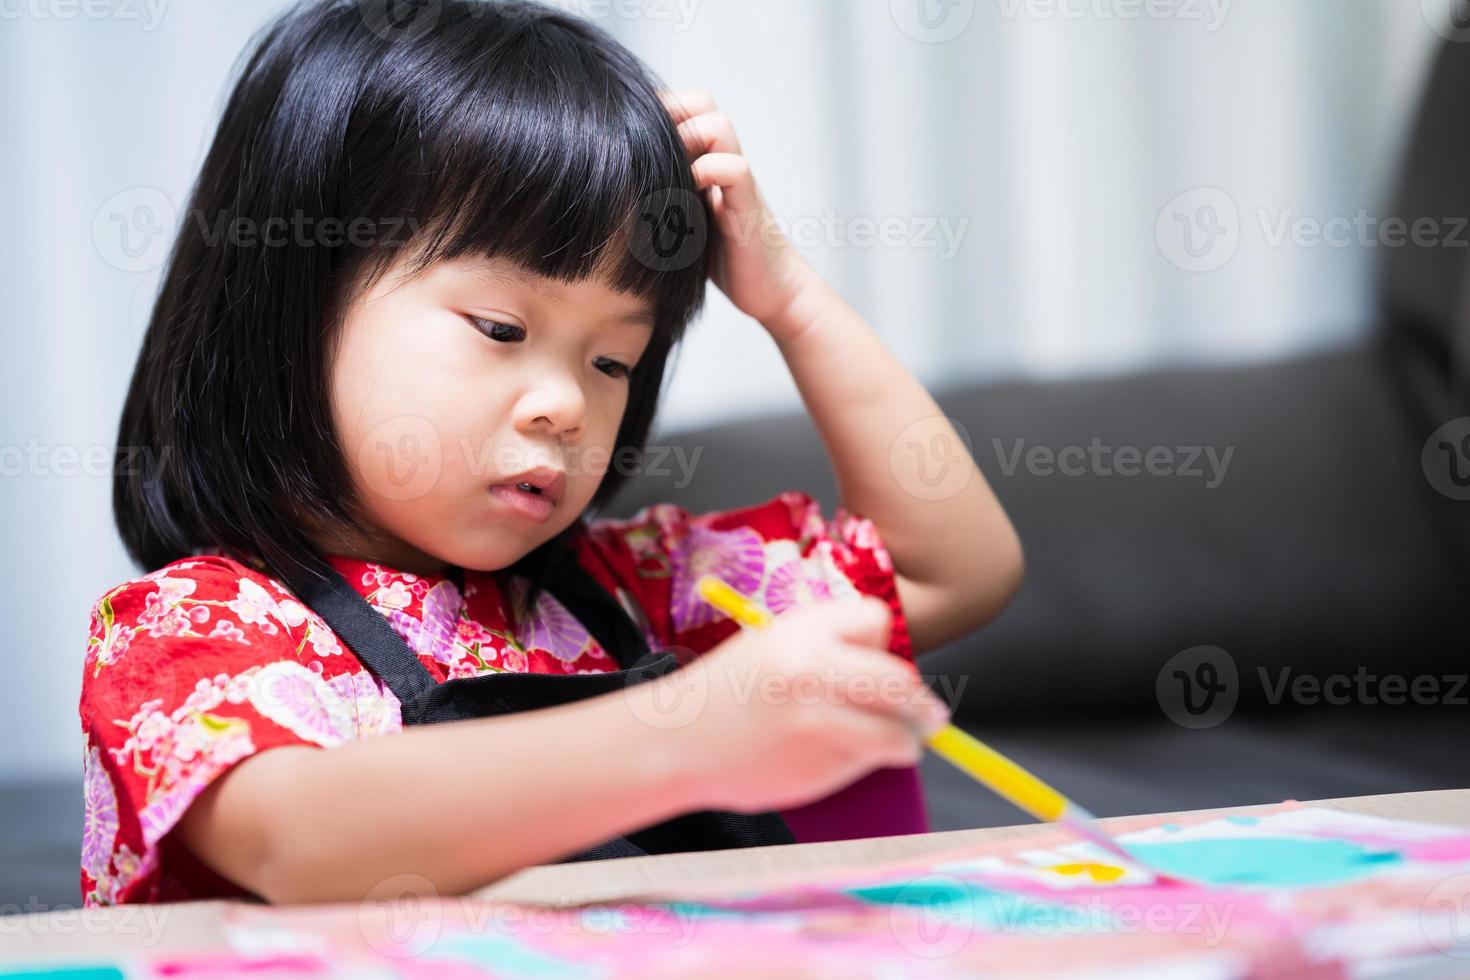 bambino che si gratta la testa a causa del prurito. i bambini studiano arte. bambino dipingere con pittori e acquerelli. nel periodo estivo. foto